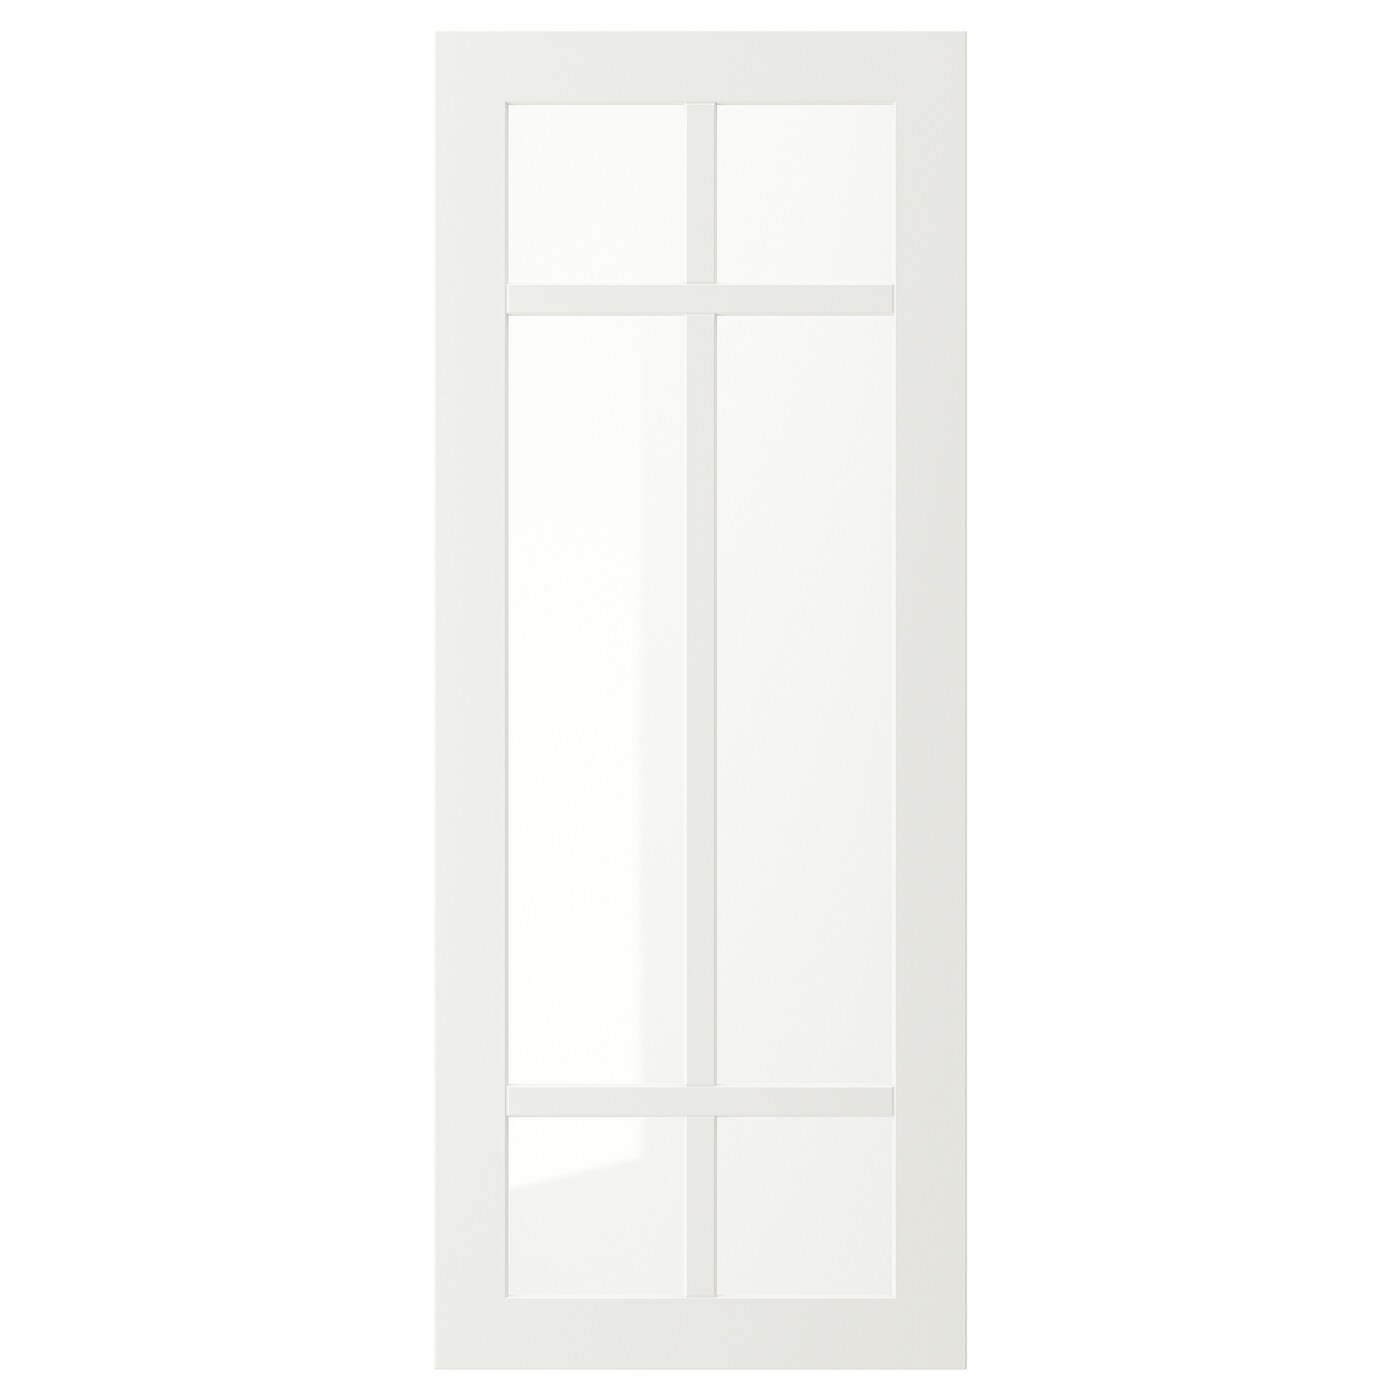 Дверца со стеклом - IKEA STENSUND, 100х40 см, белый, СТЕНСУНД ИКЕА